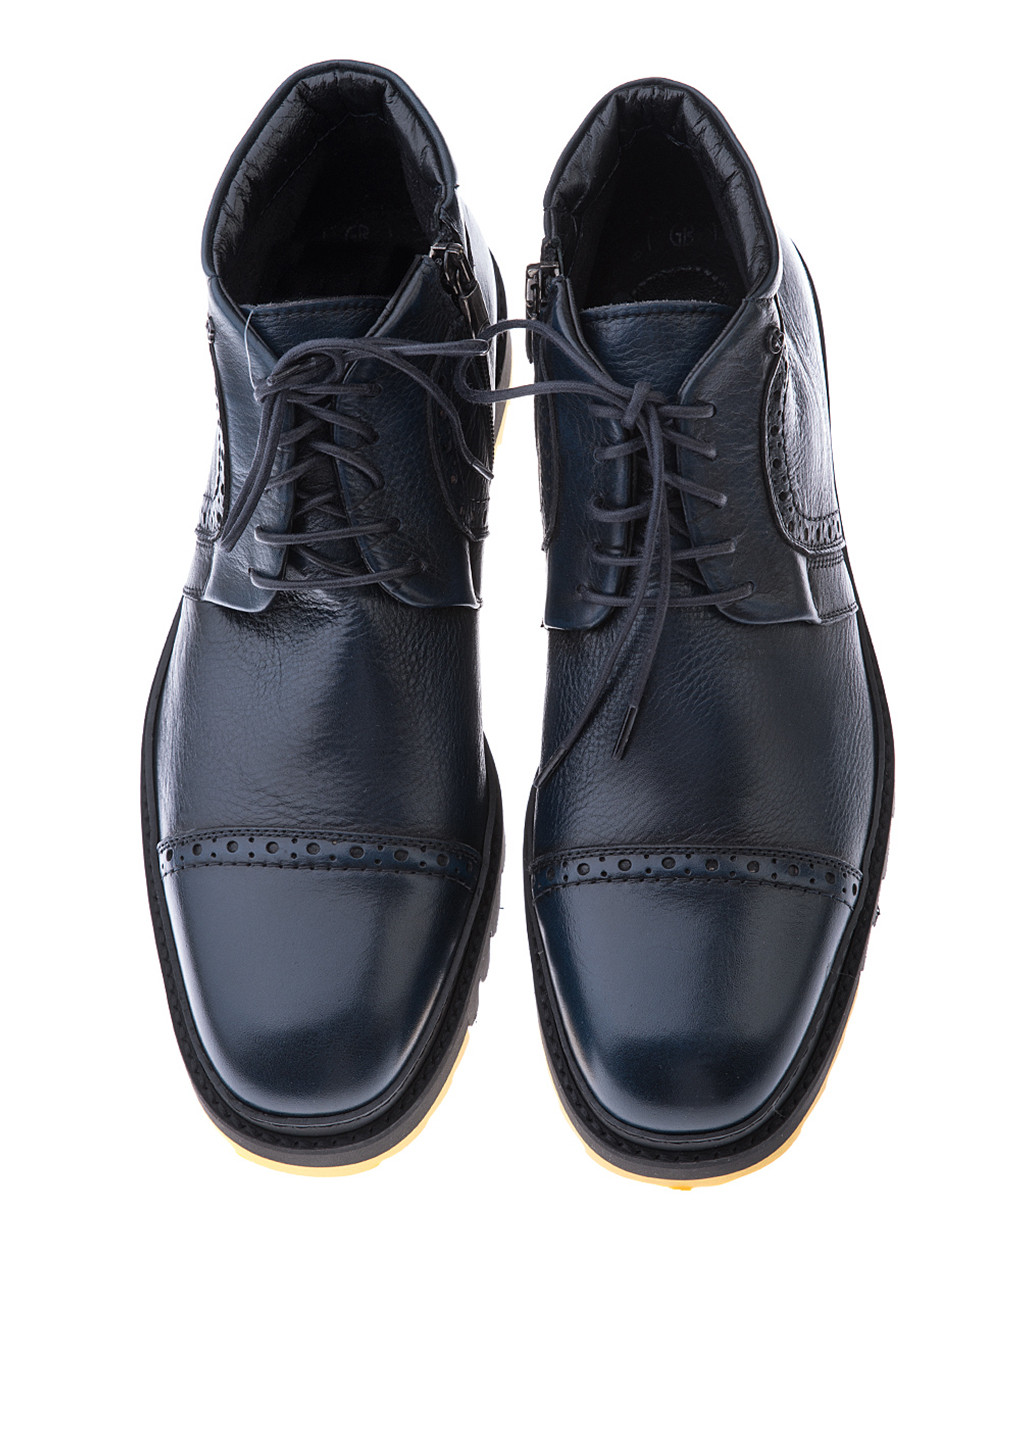 Черные осенние ботинки броги GF.BUTERI